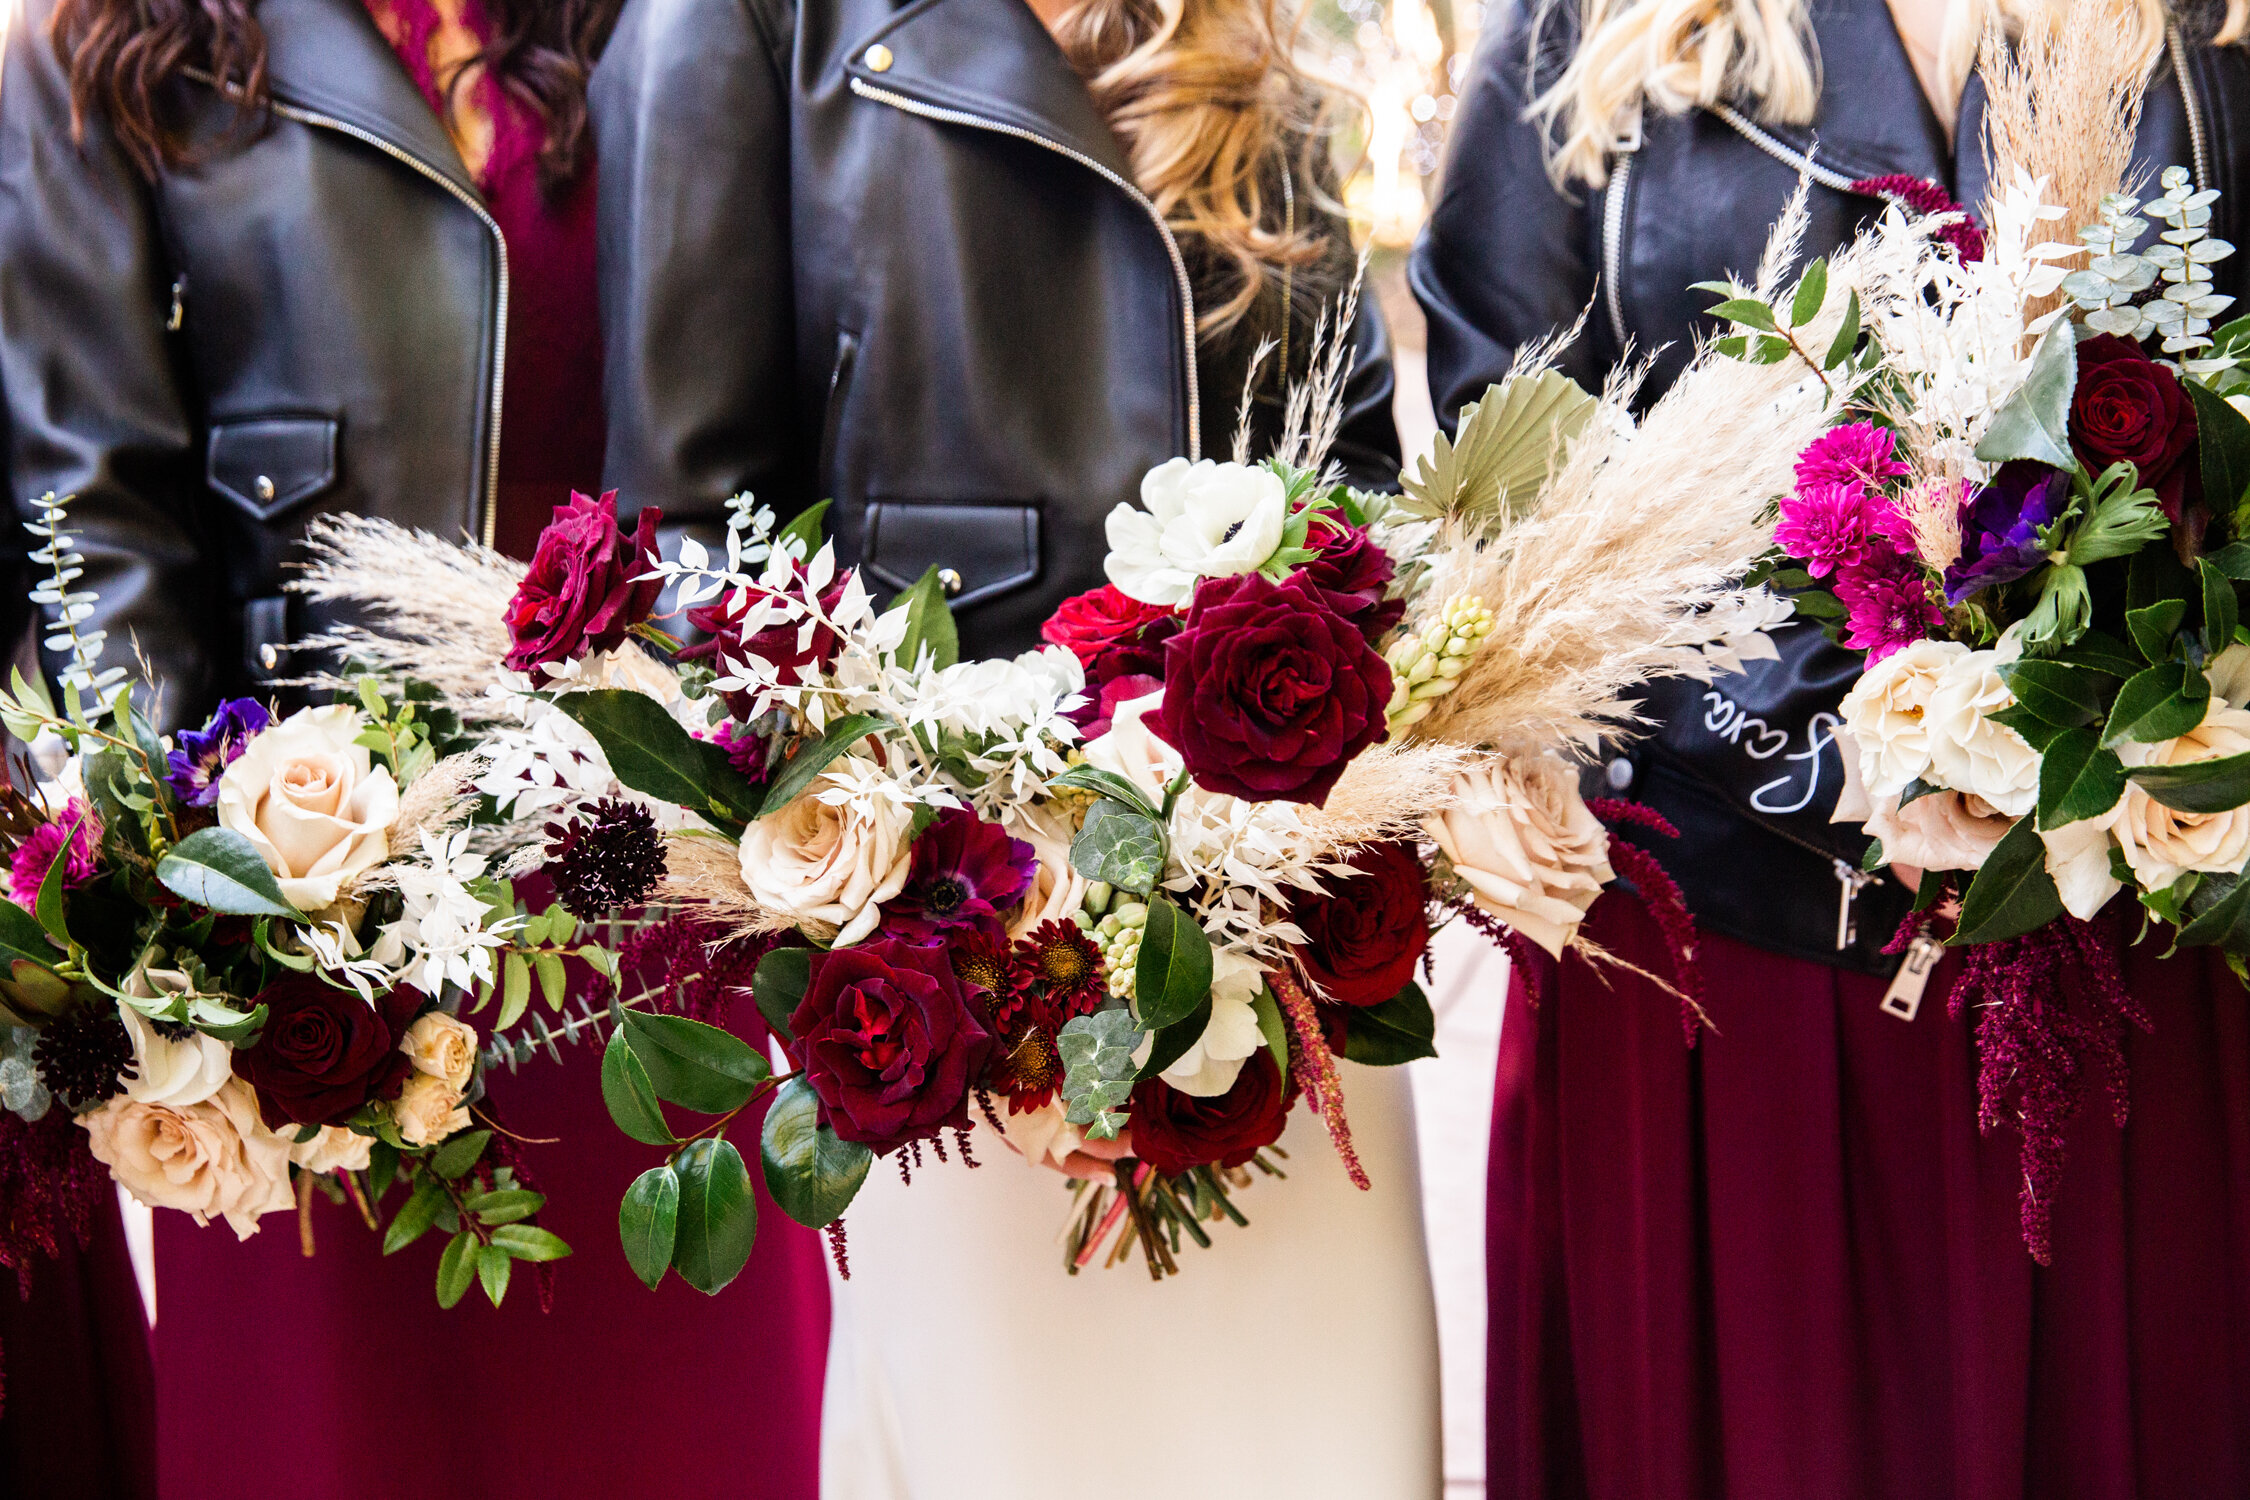 Edgy modern wedding flowers